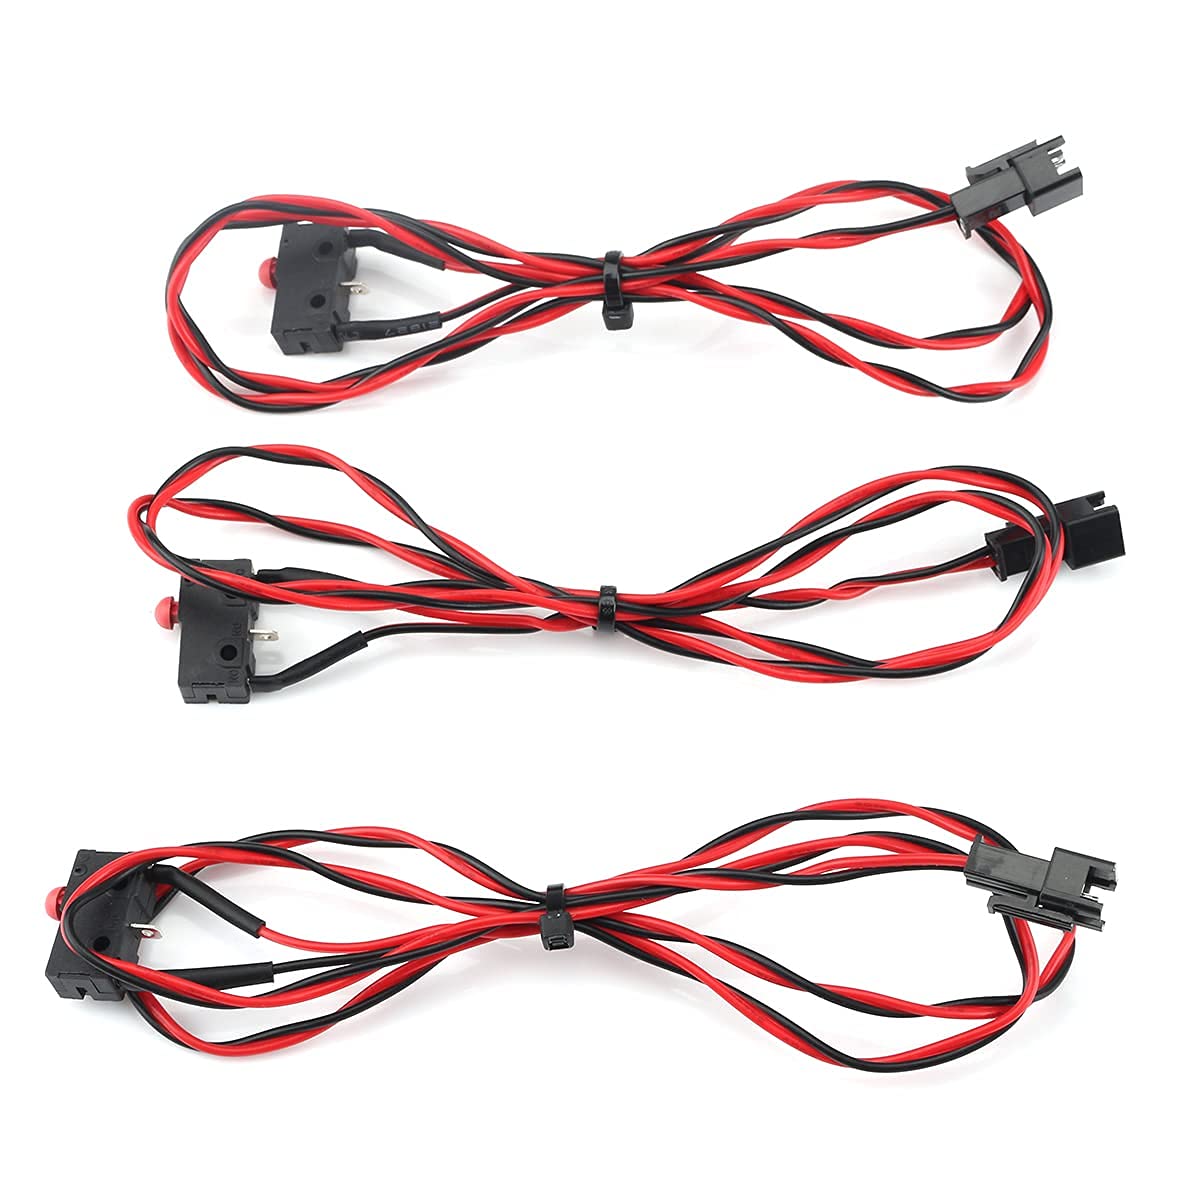 FLSUN® 3pcs Mechanical Endstop Limit Switch Module + 730mm Cable for QQ-S / Q5